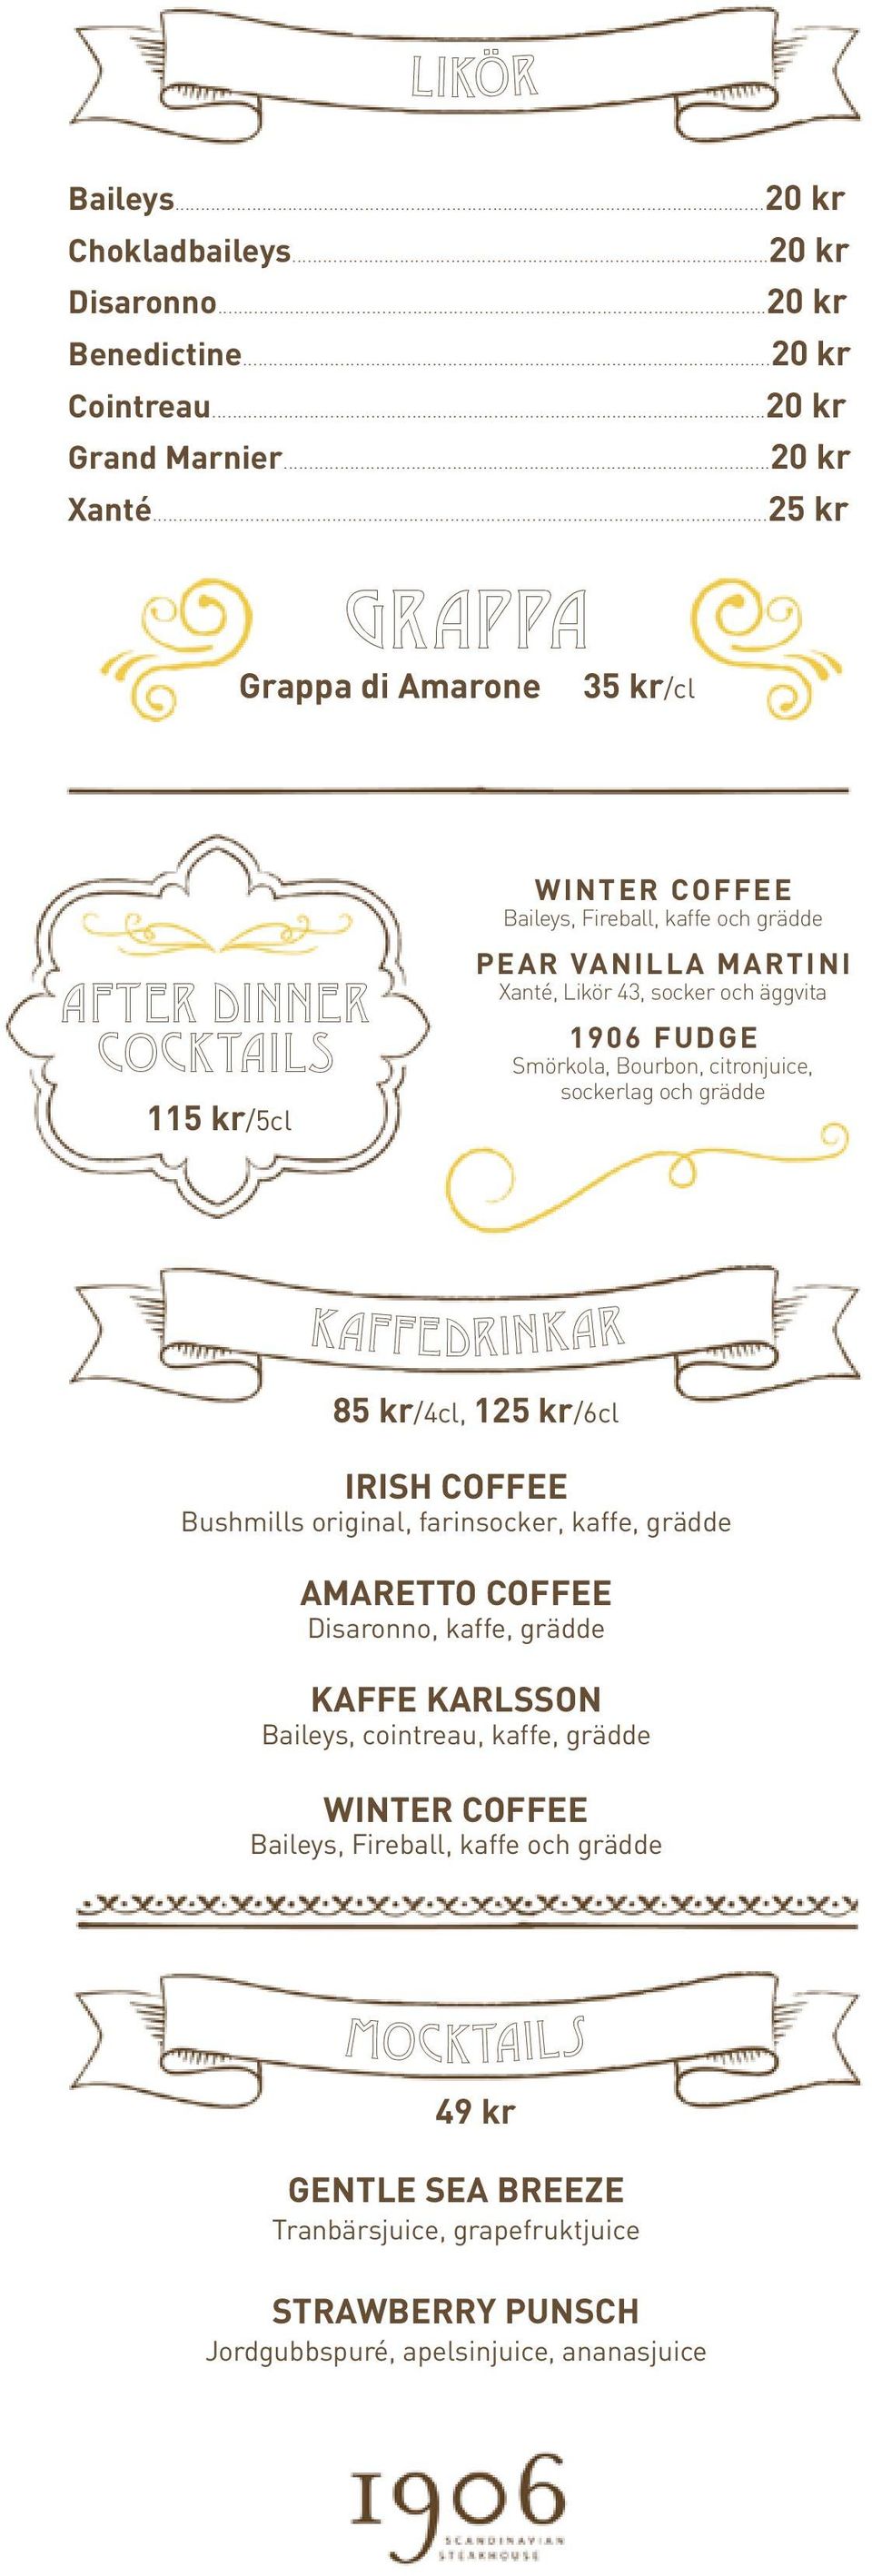 1906 FUDGE Smörkola, Bourbon, citronjuice, sockerlag och grädde KAFFEDRINKAR 85 kr/4cl, 125 kr/6cl IRISH COFFEE Bushmills original, farinsocker, kaffe, grädde AMARETTO COFFEE